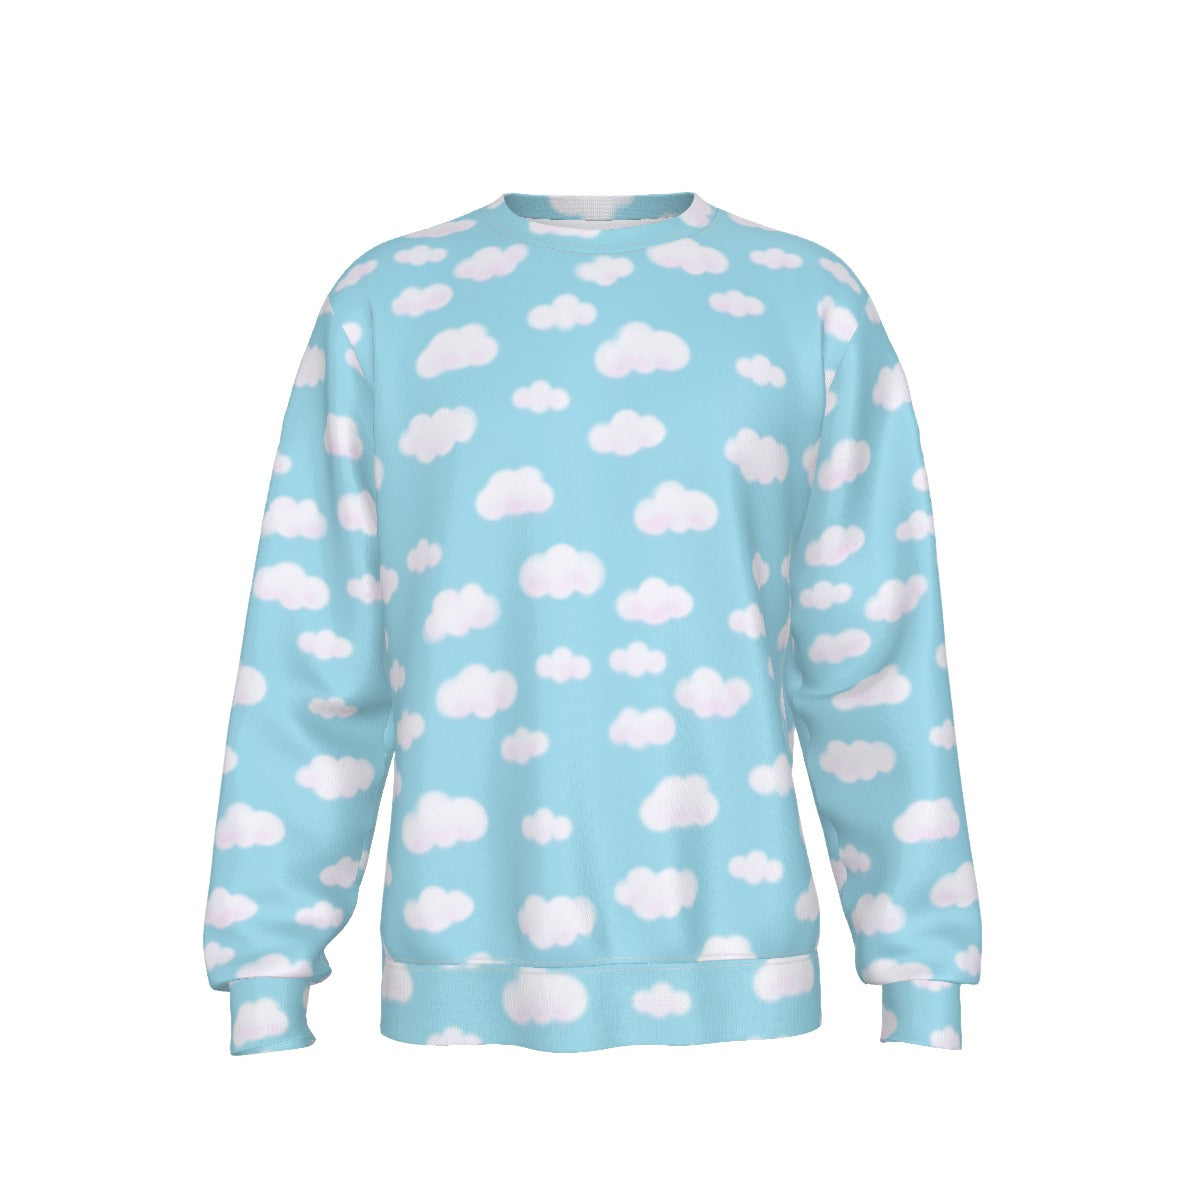 Dreamy Clouds Men's Sweatshirt (Sky Blue)